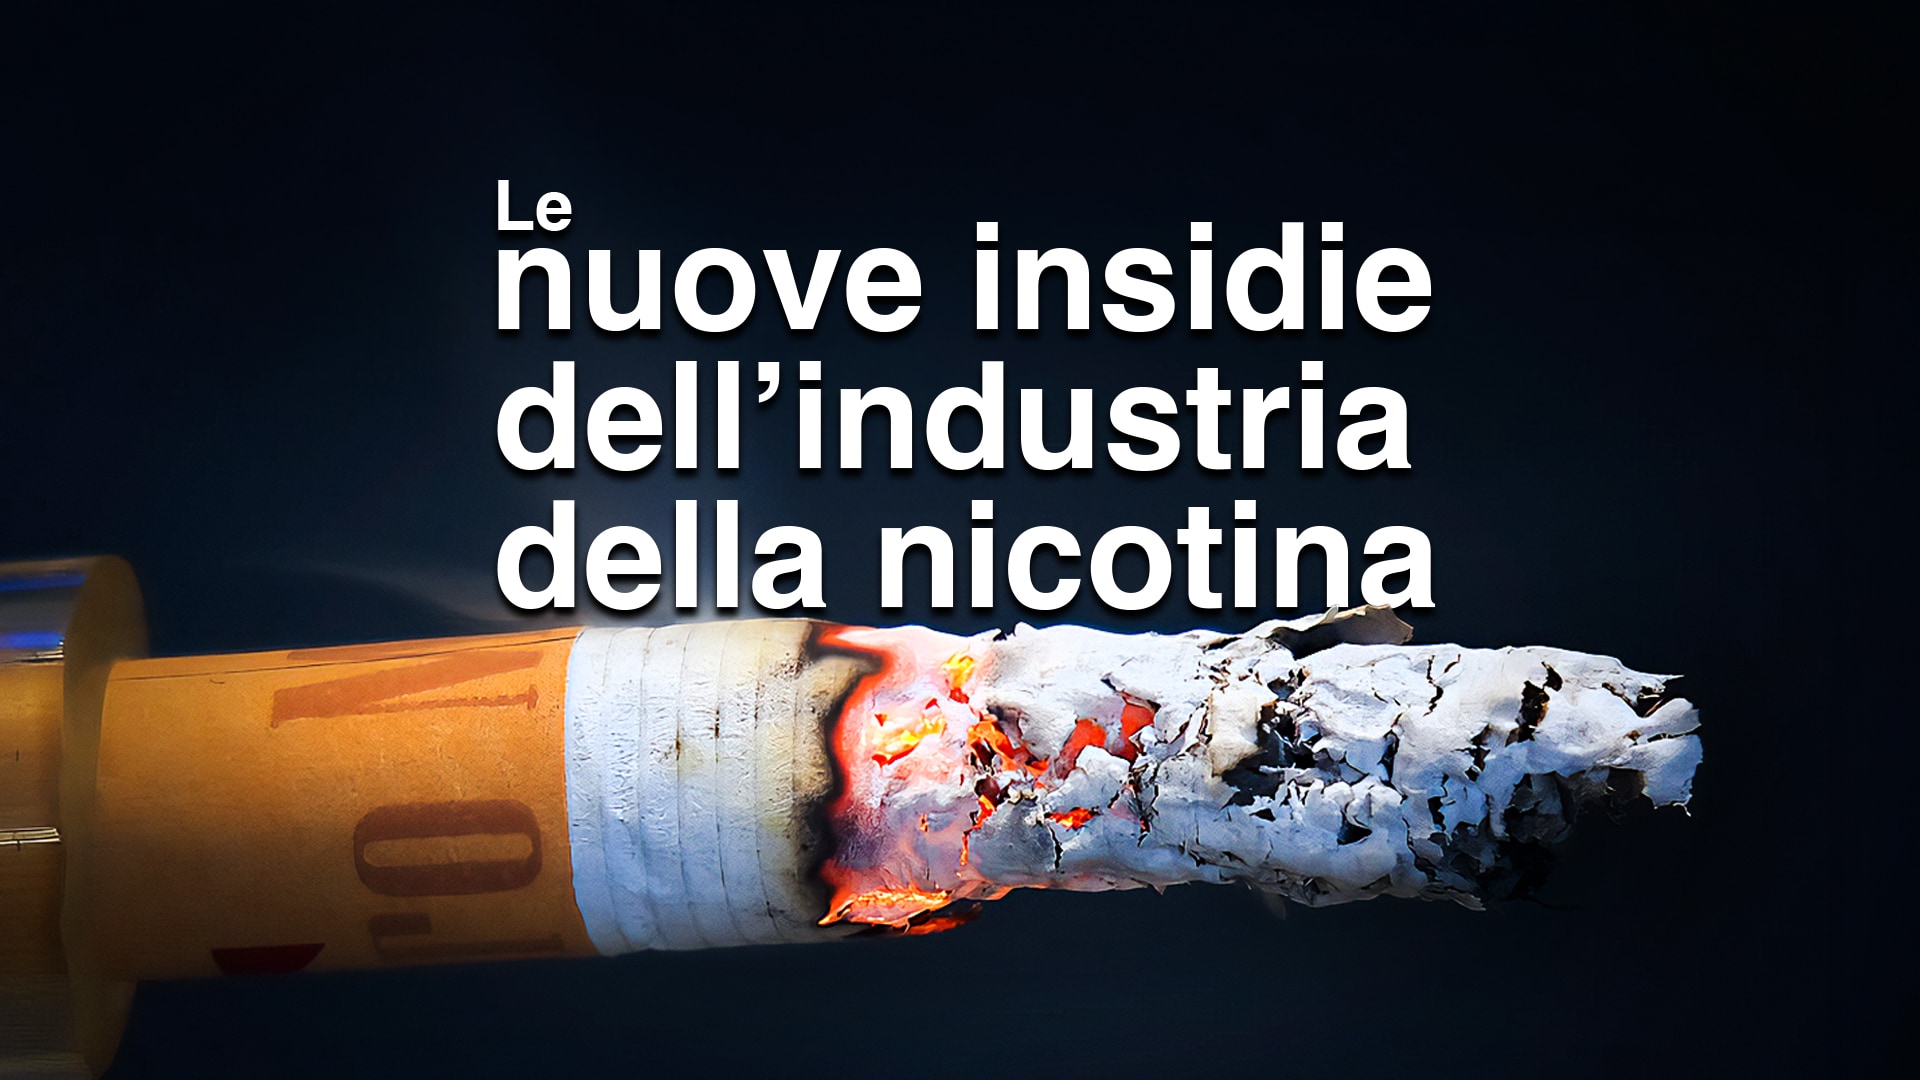 Le nuove insidie dell'industria della nicotina